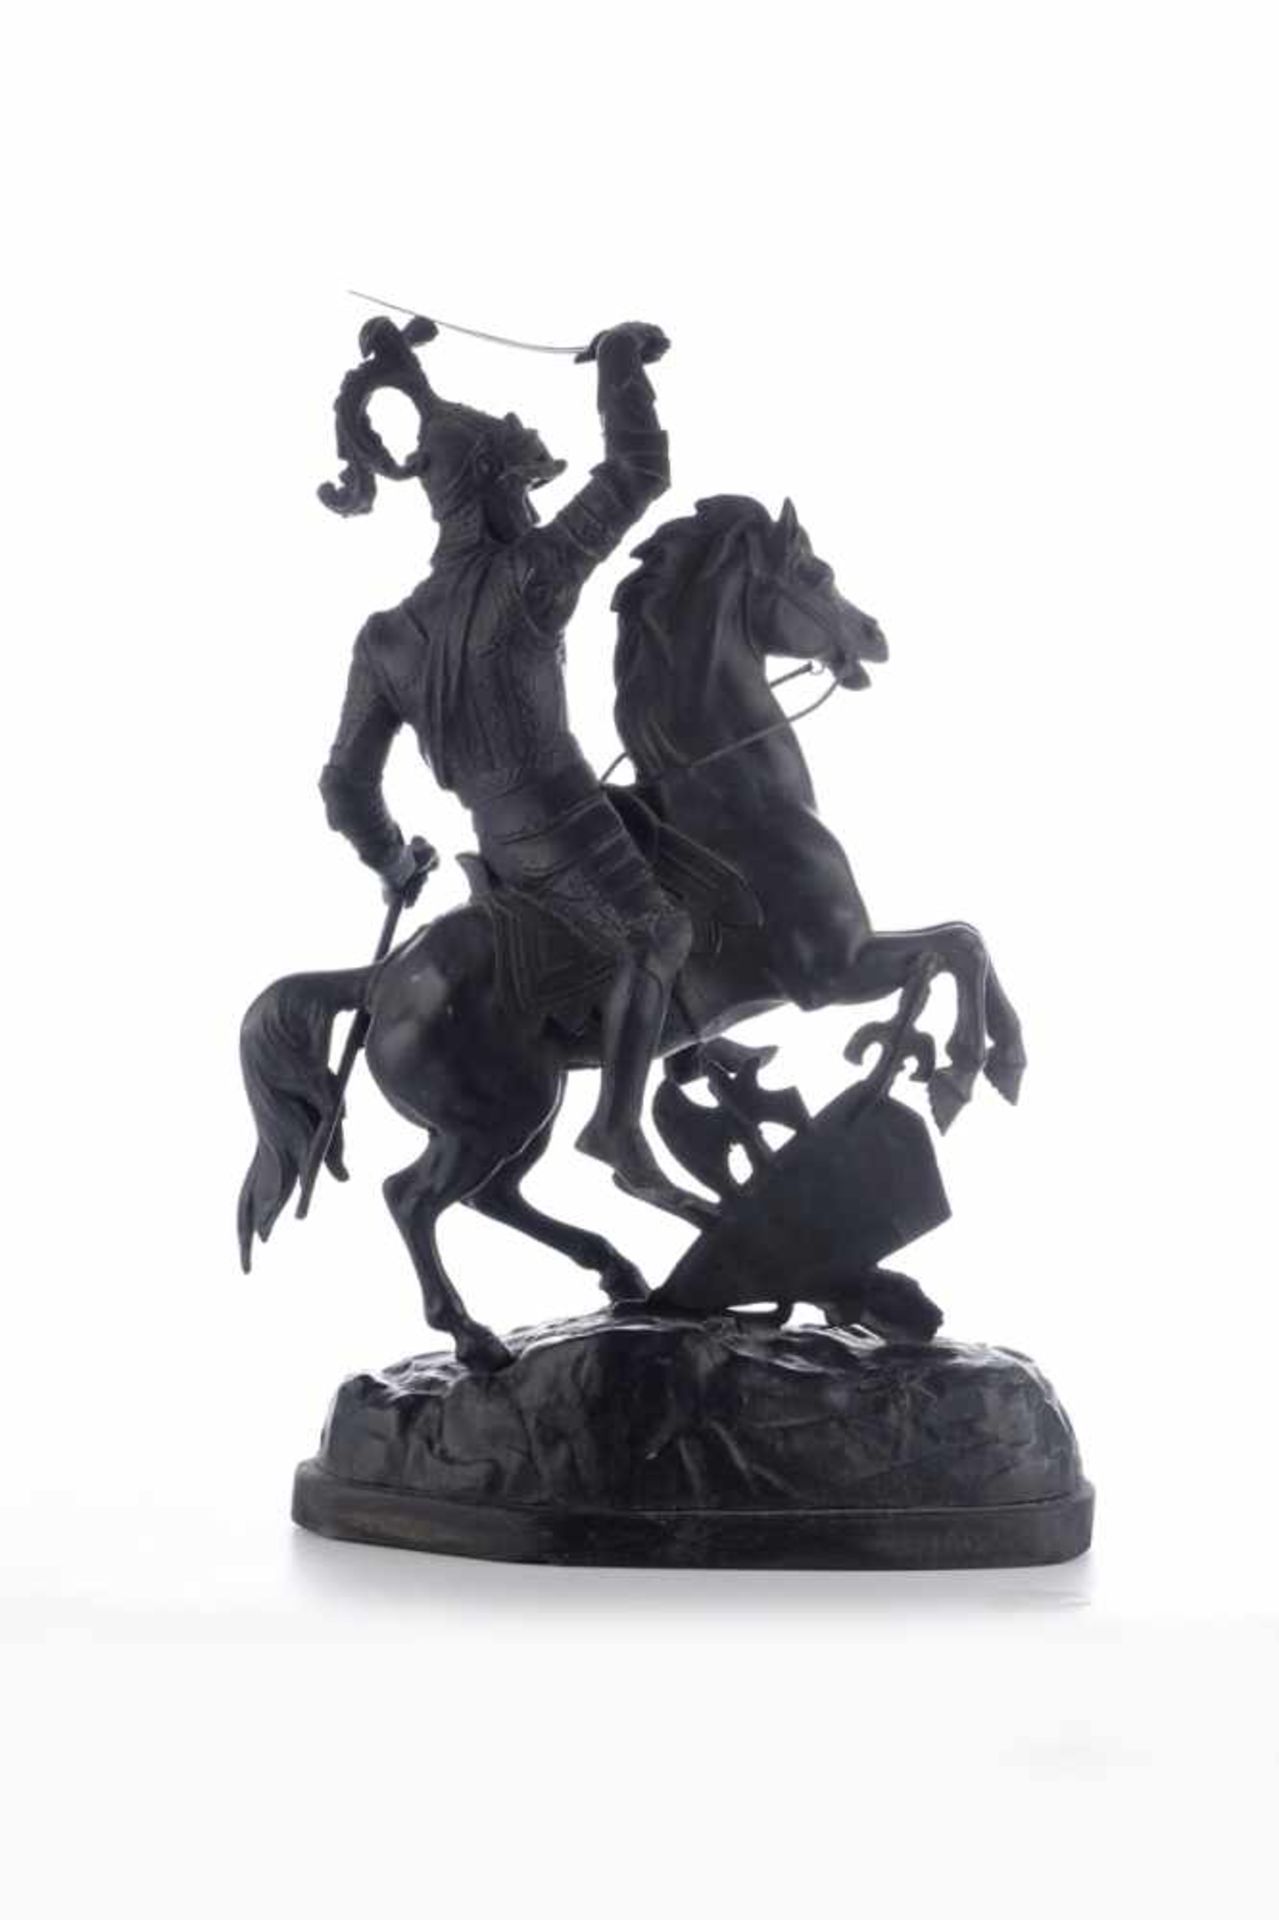 Kämpfende Ritter zu Pferde.Antike Skulpturen, Gegenstücke um 1880, Zinkguss geschwärzt. - Bild 5 aus 8